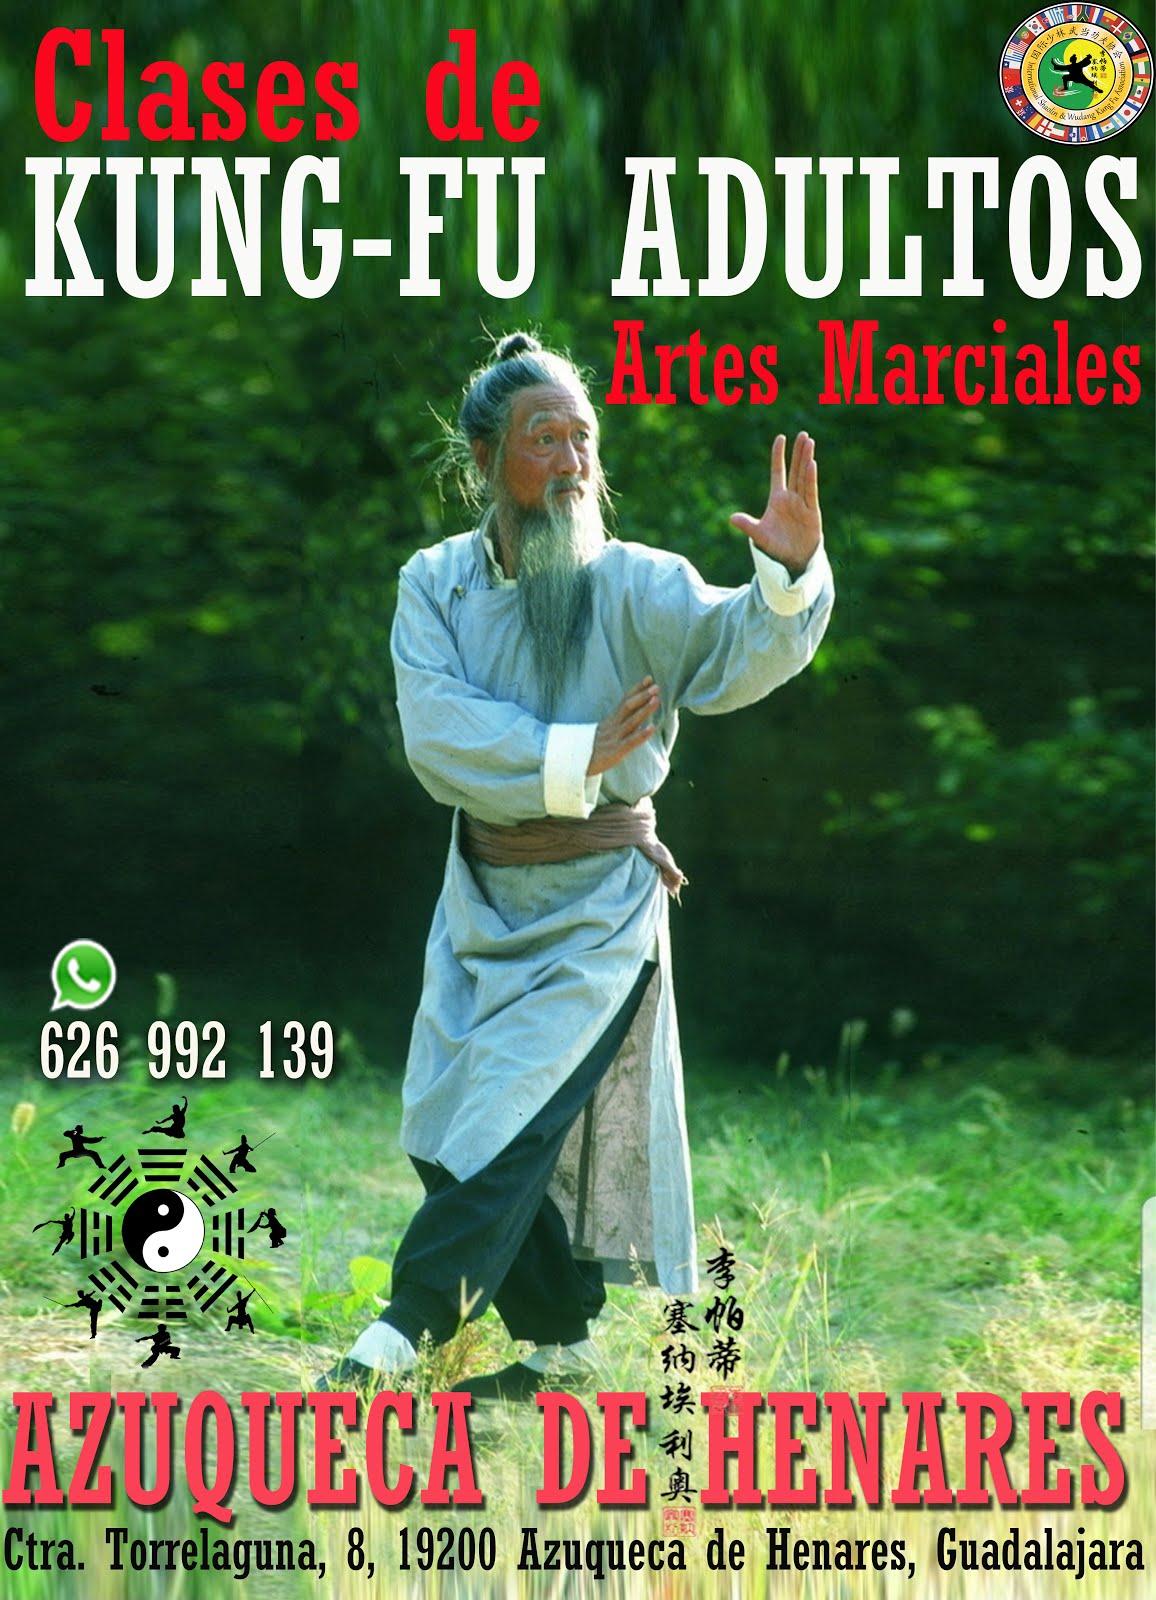 Kung-Fu Cursos y Clases, Infantil y Adultos - Azuqueca de henares - España.